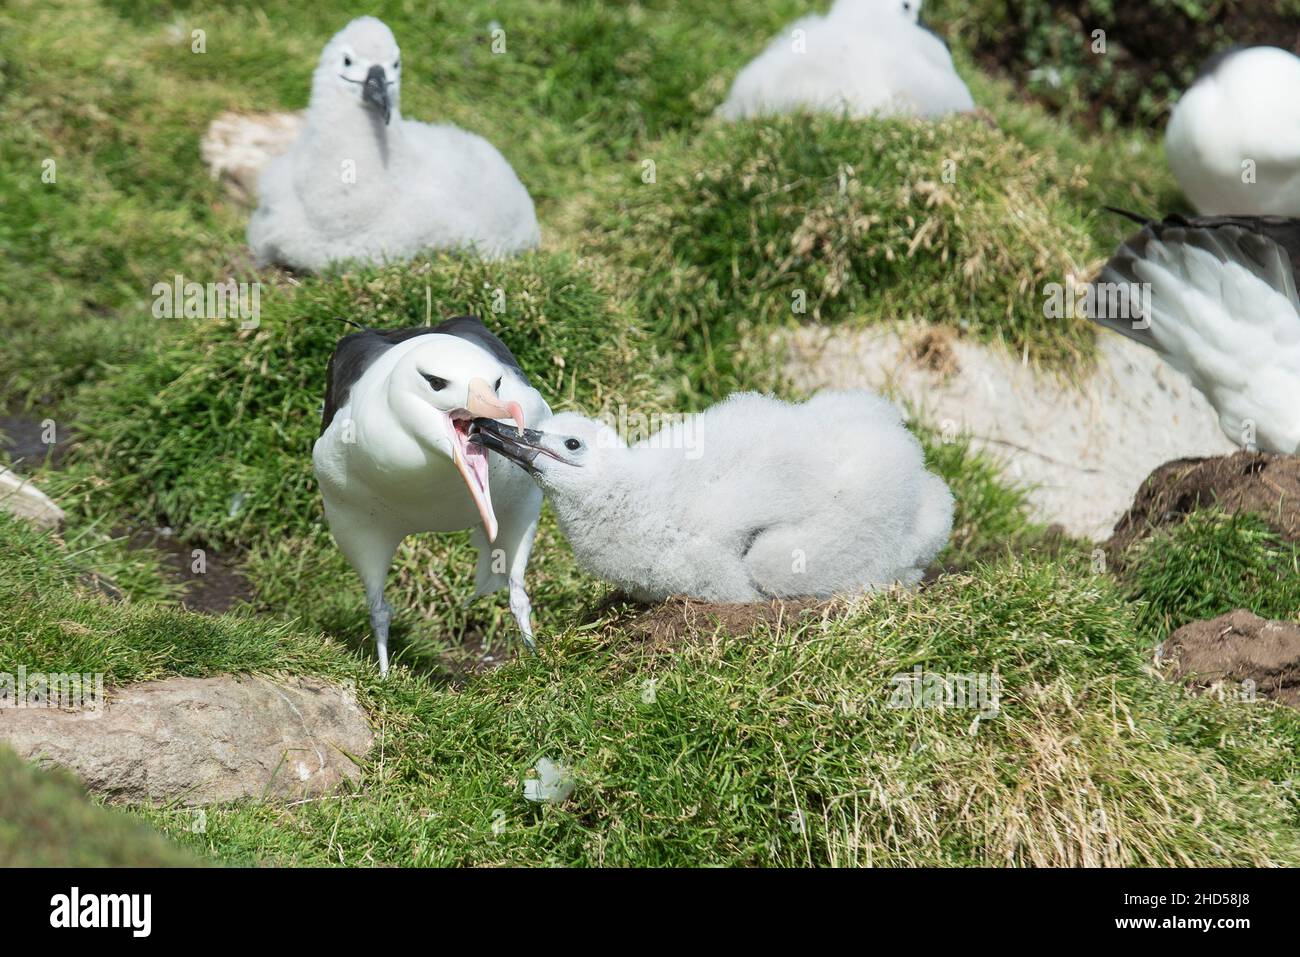 L'albatros brun noir ( Thalassarche melanophris ) nichent les îles Falkland Atlantique Sud, chiche nourricières, île Saunders Banque D'Images